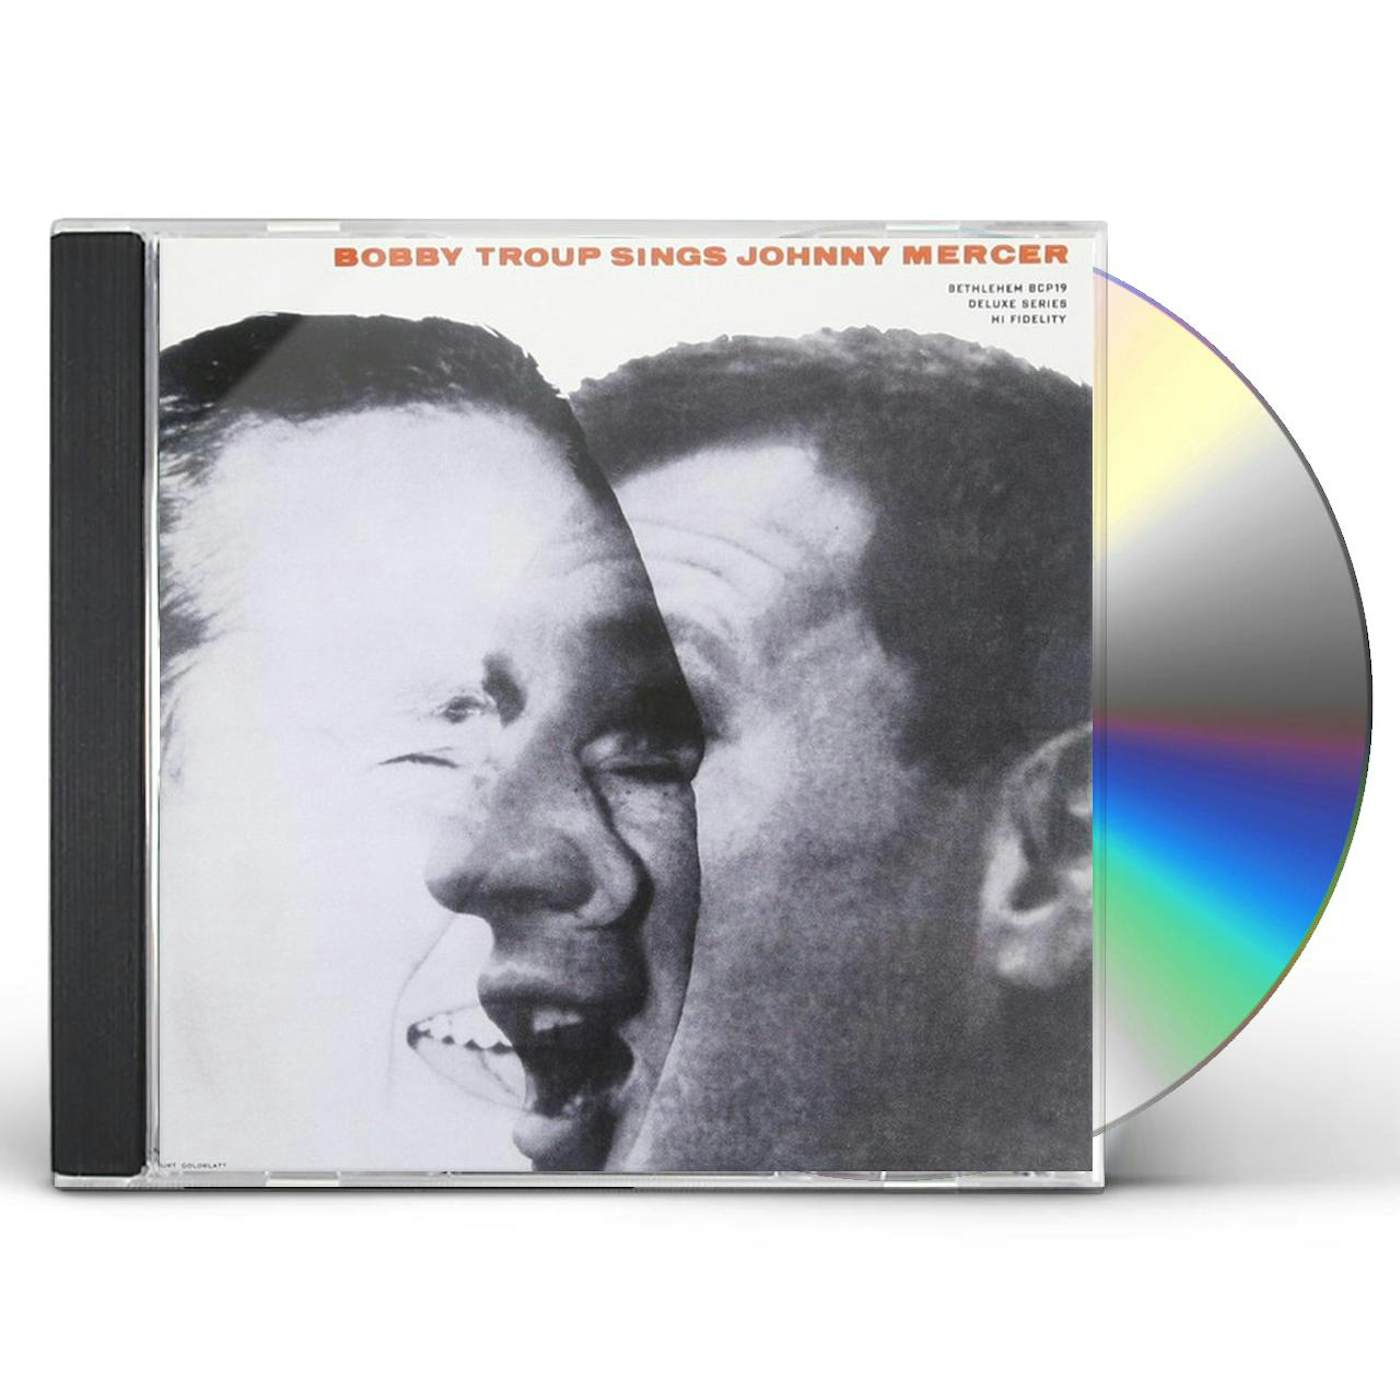 BOBBY TROUP SINGS JOHNNY MERCER CD